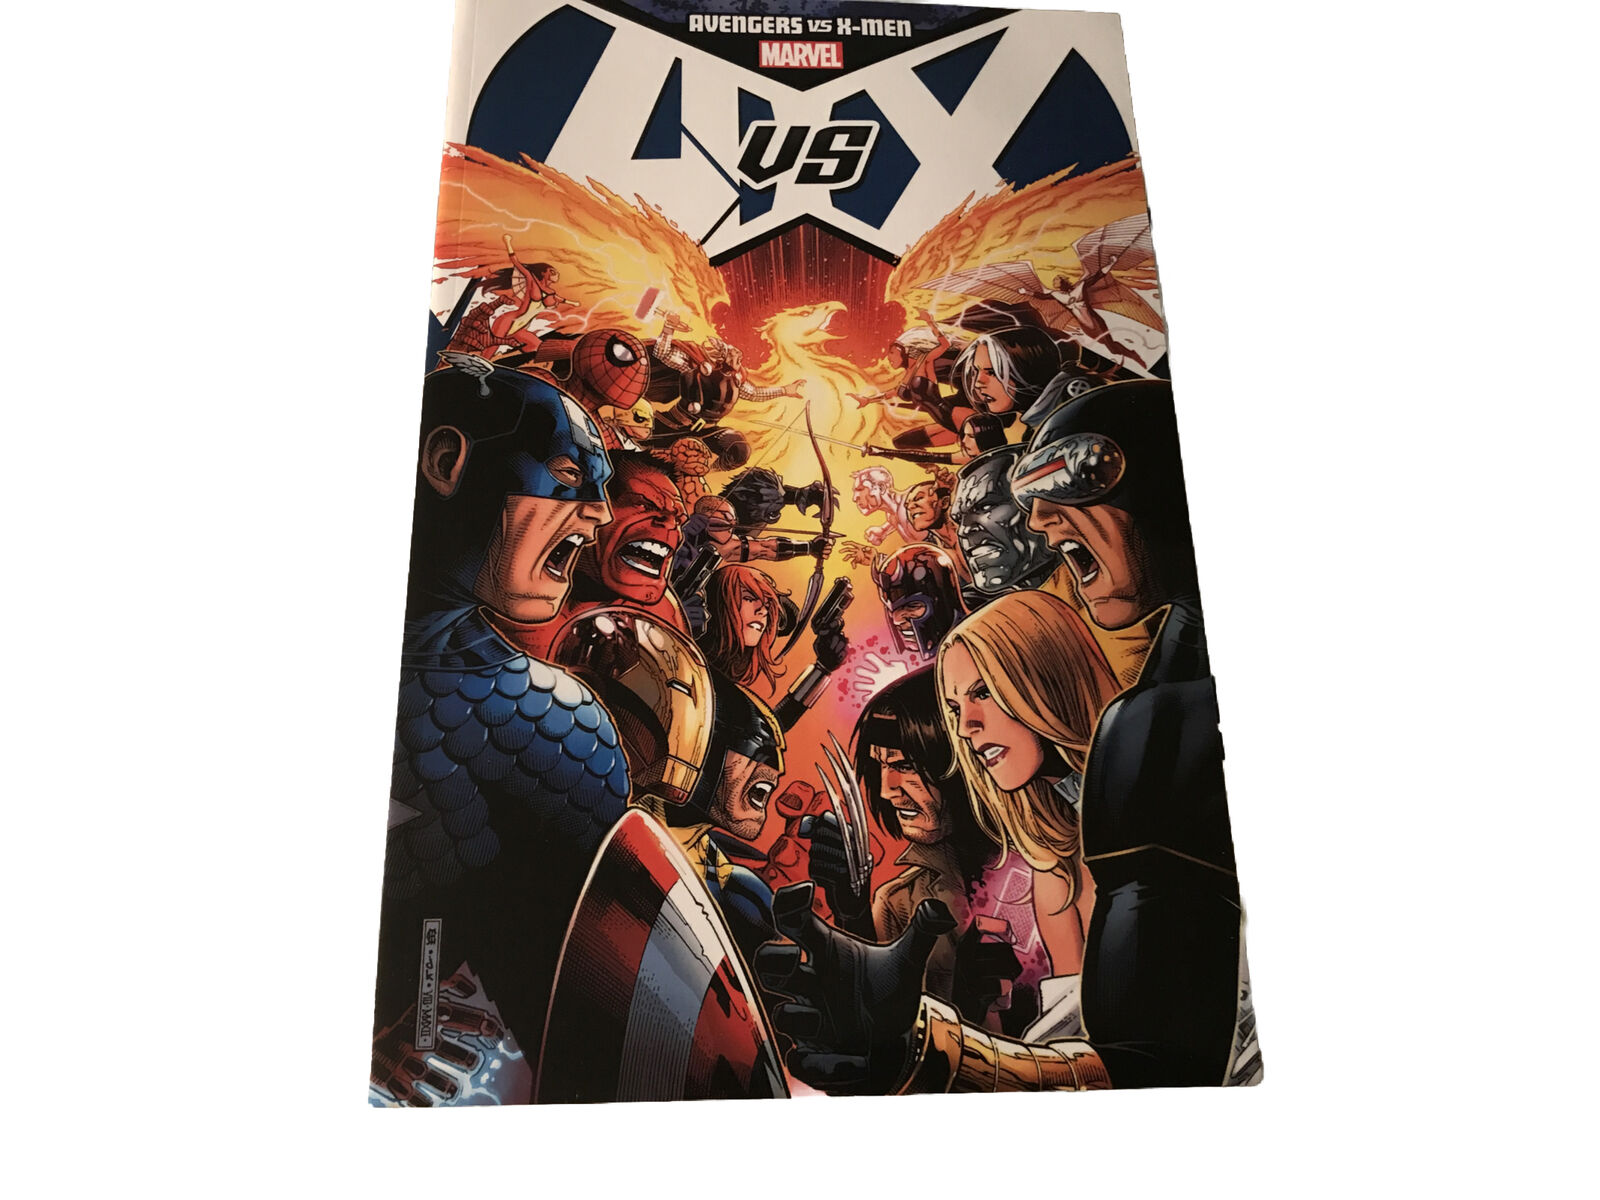 Avengers vs. X-Men Marvel, 2012 VGC